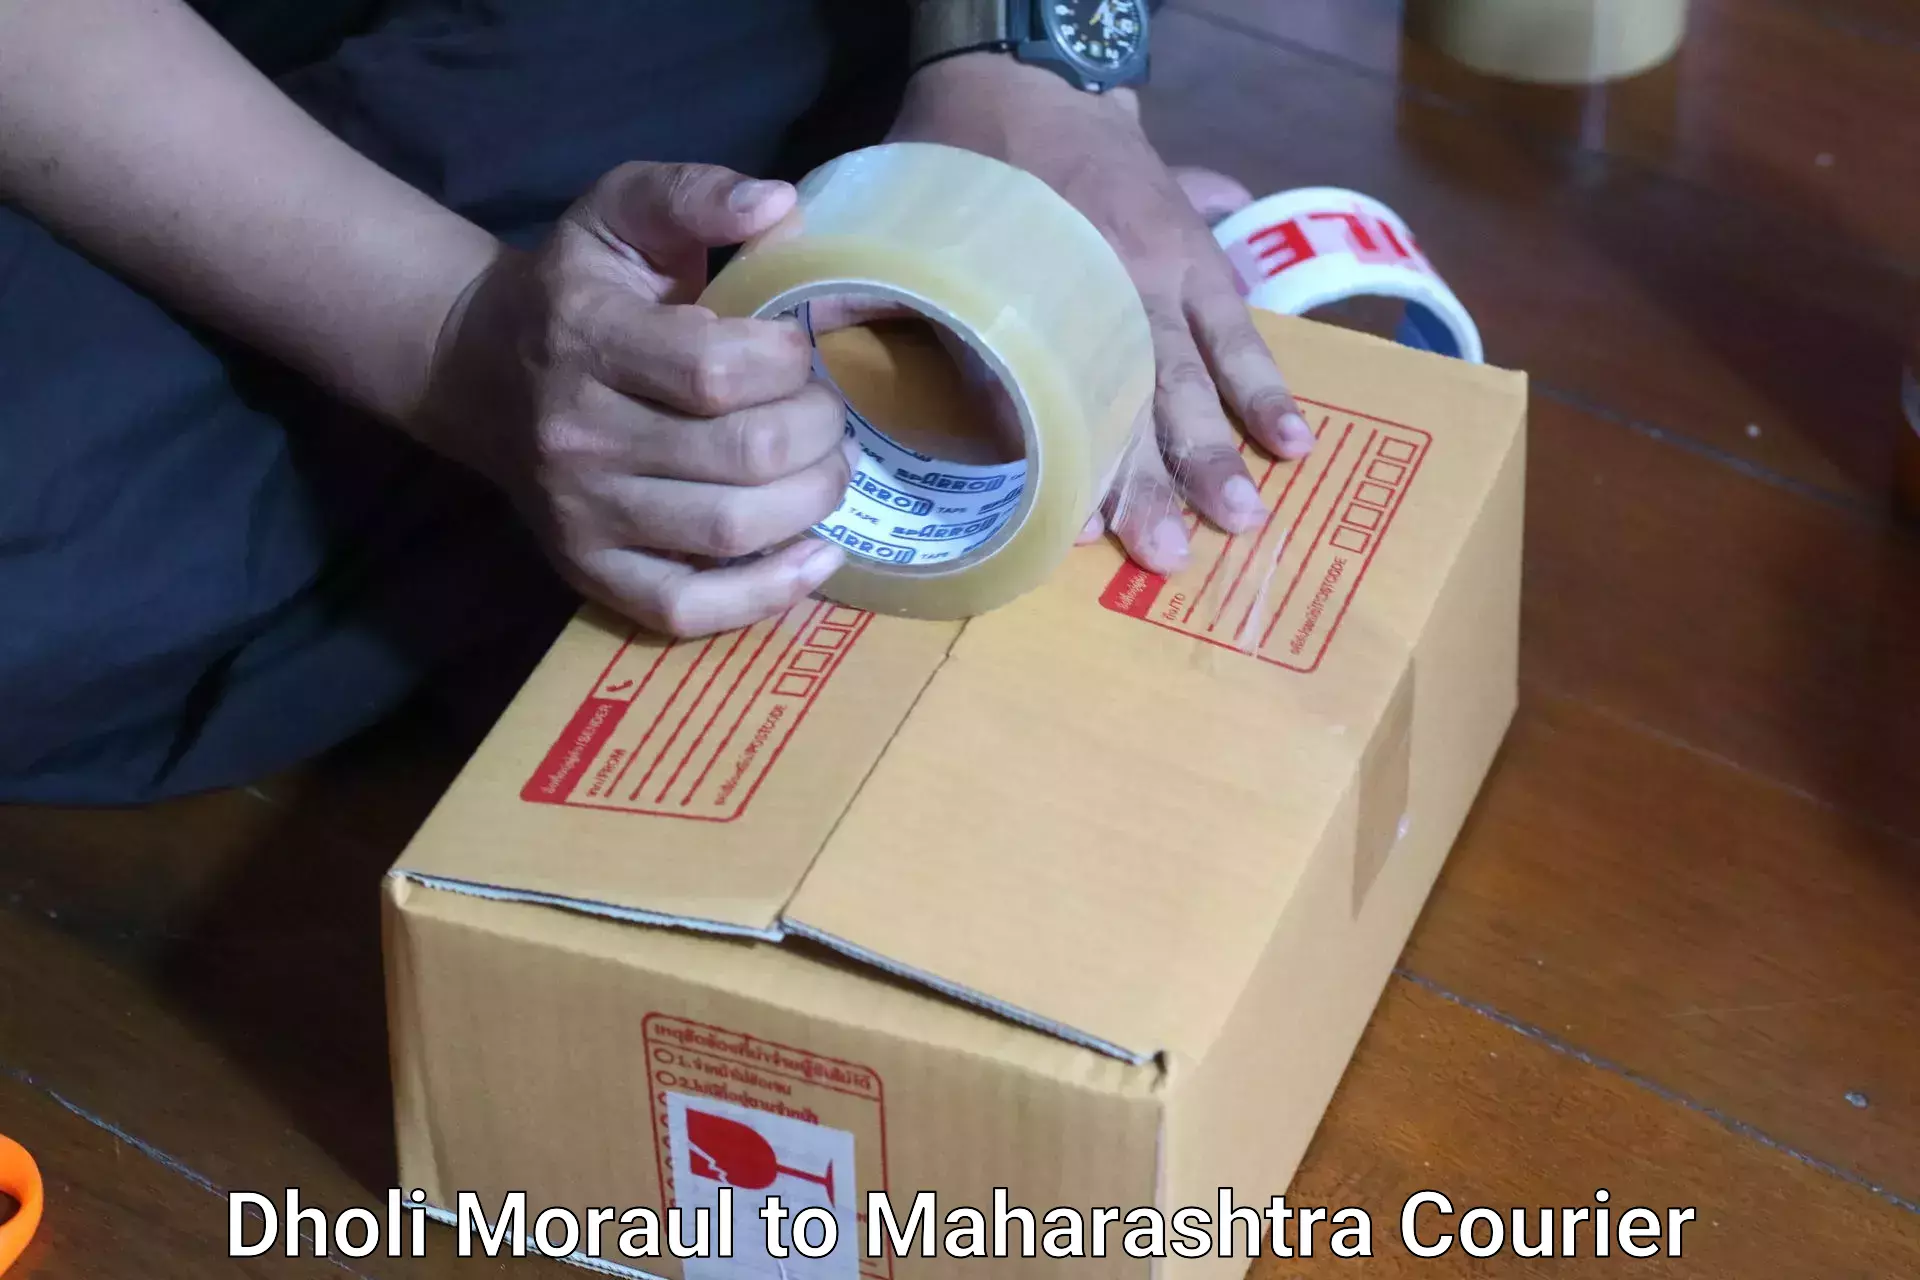 High-quality baggage shipment Dholi Moraul to Maharashtra